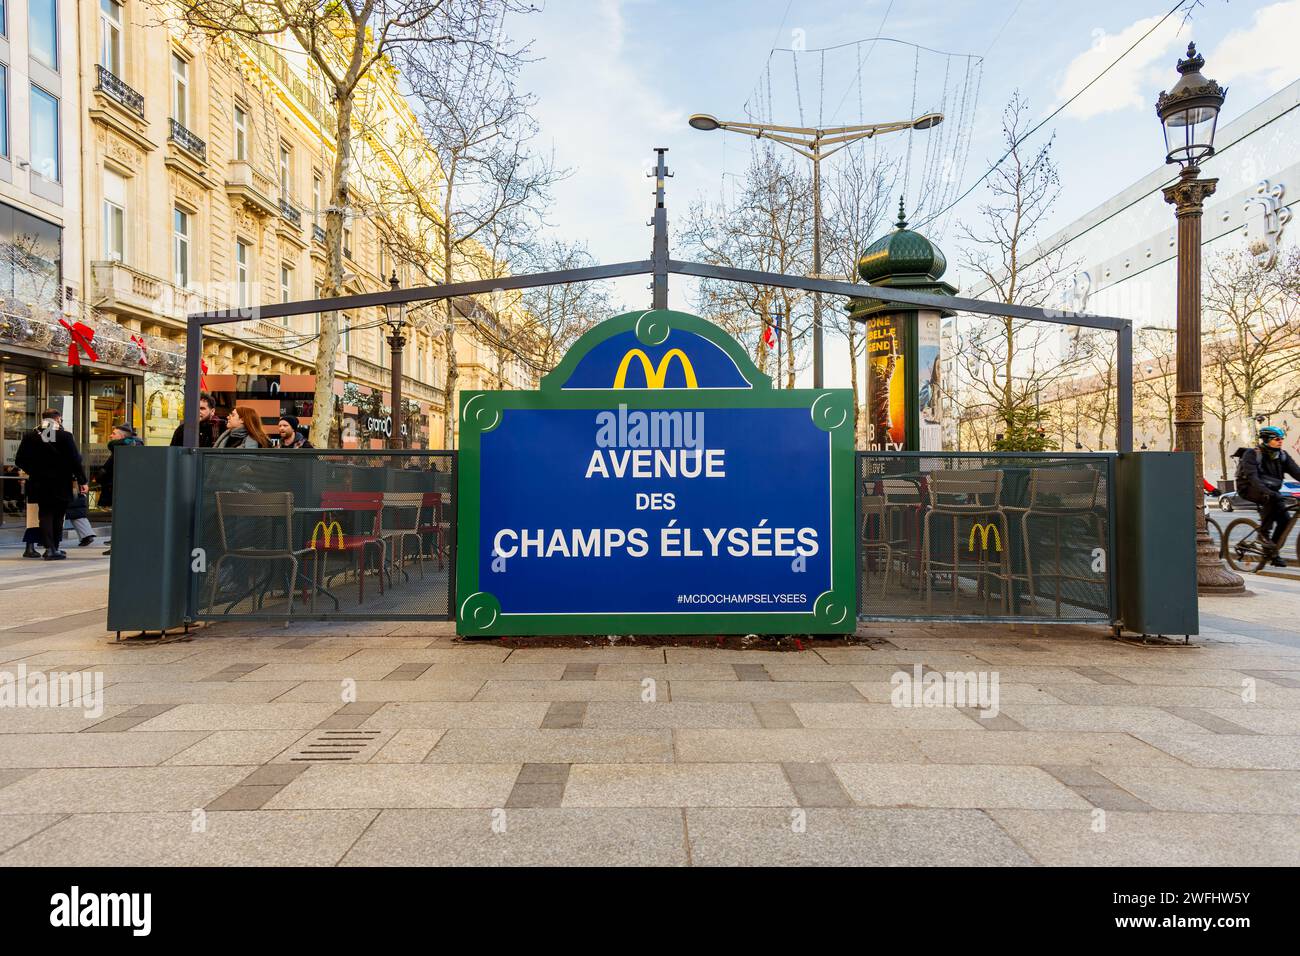 McDonald's branch with Patio on Avenue des Champs Elysées in Paris France Stock Photo